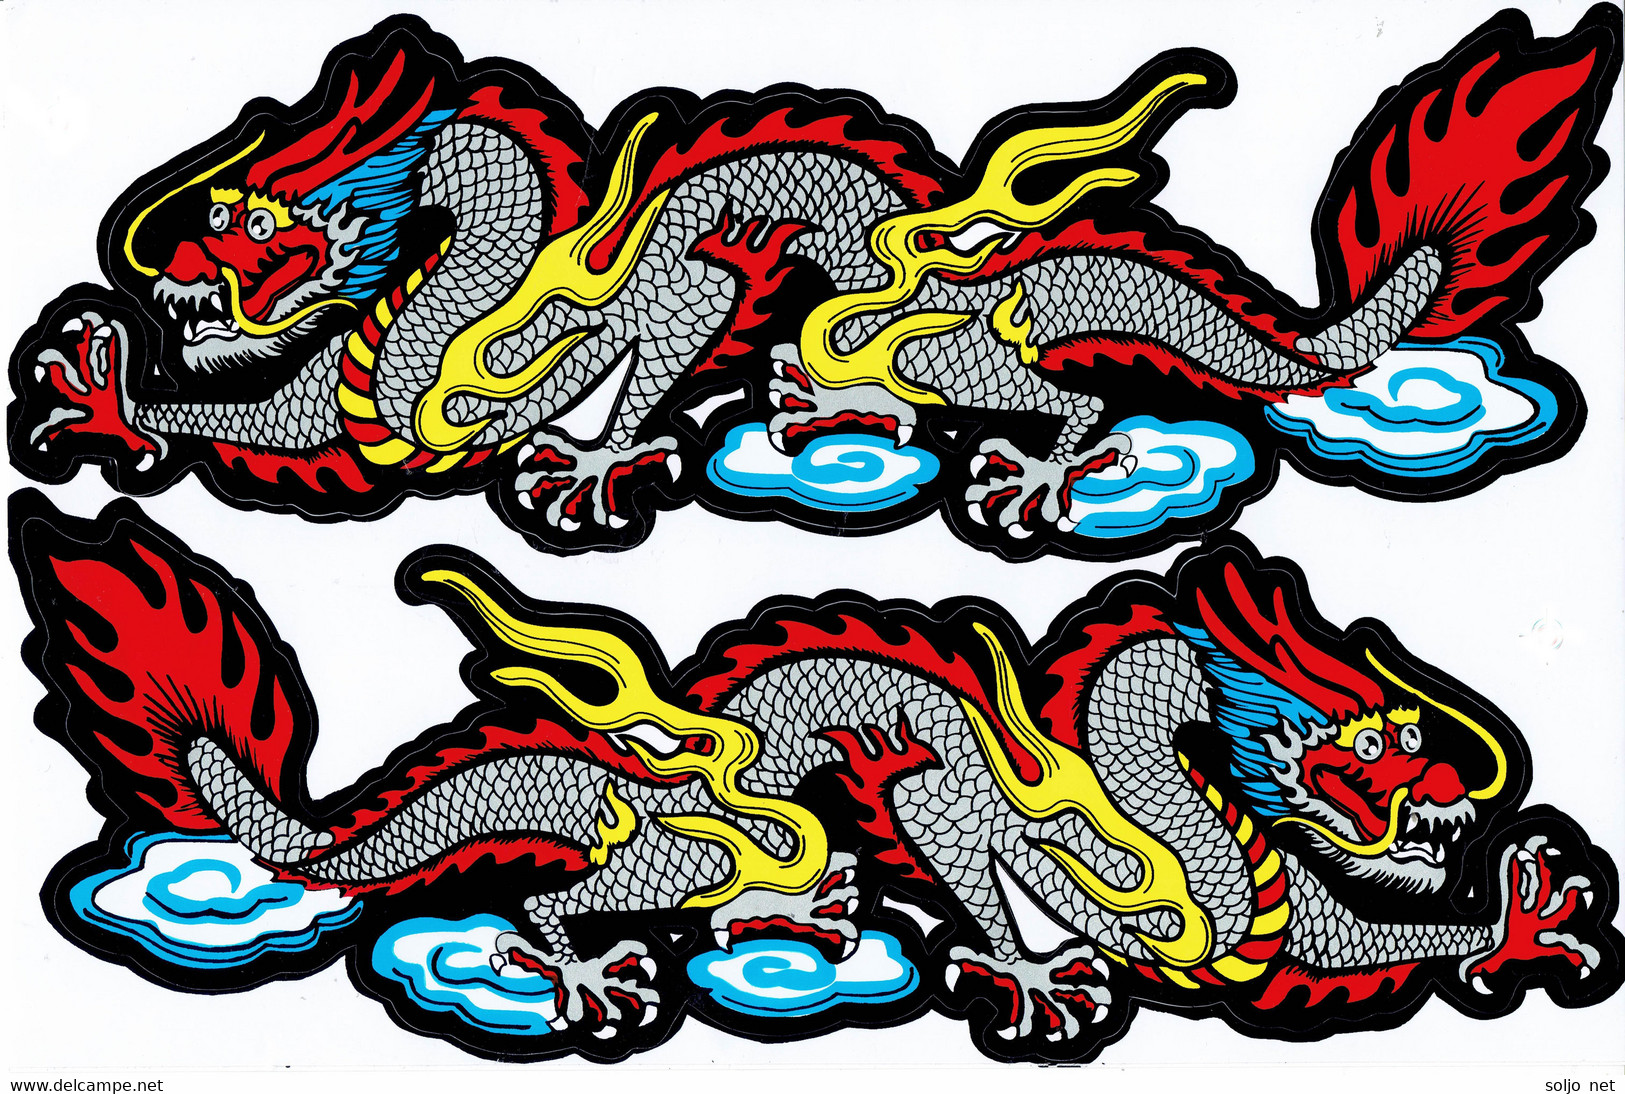 Drachen Grau Tiere Aufkleber / Dragon Grey Animal Sticker A4 1 Bogen 27 X 18 Cm ST491 - Scrapbooking